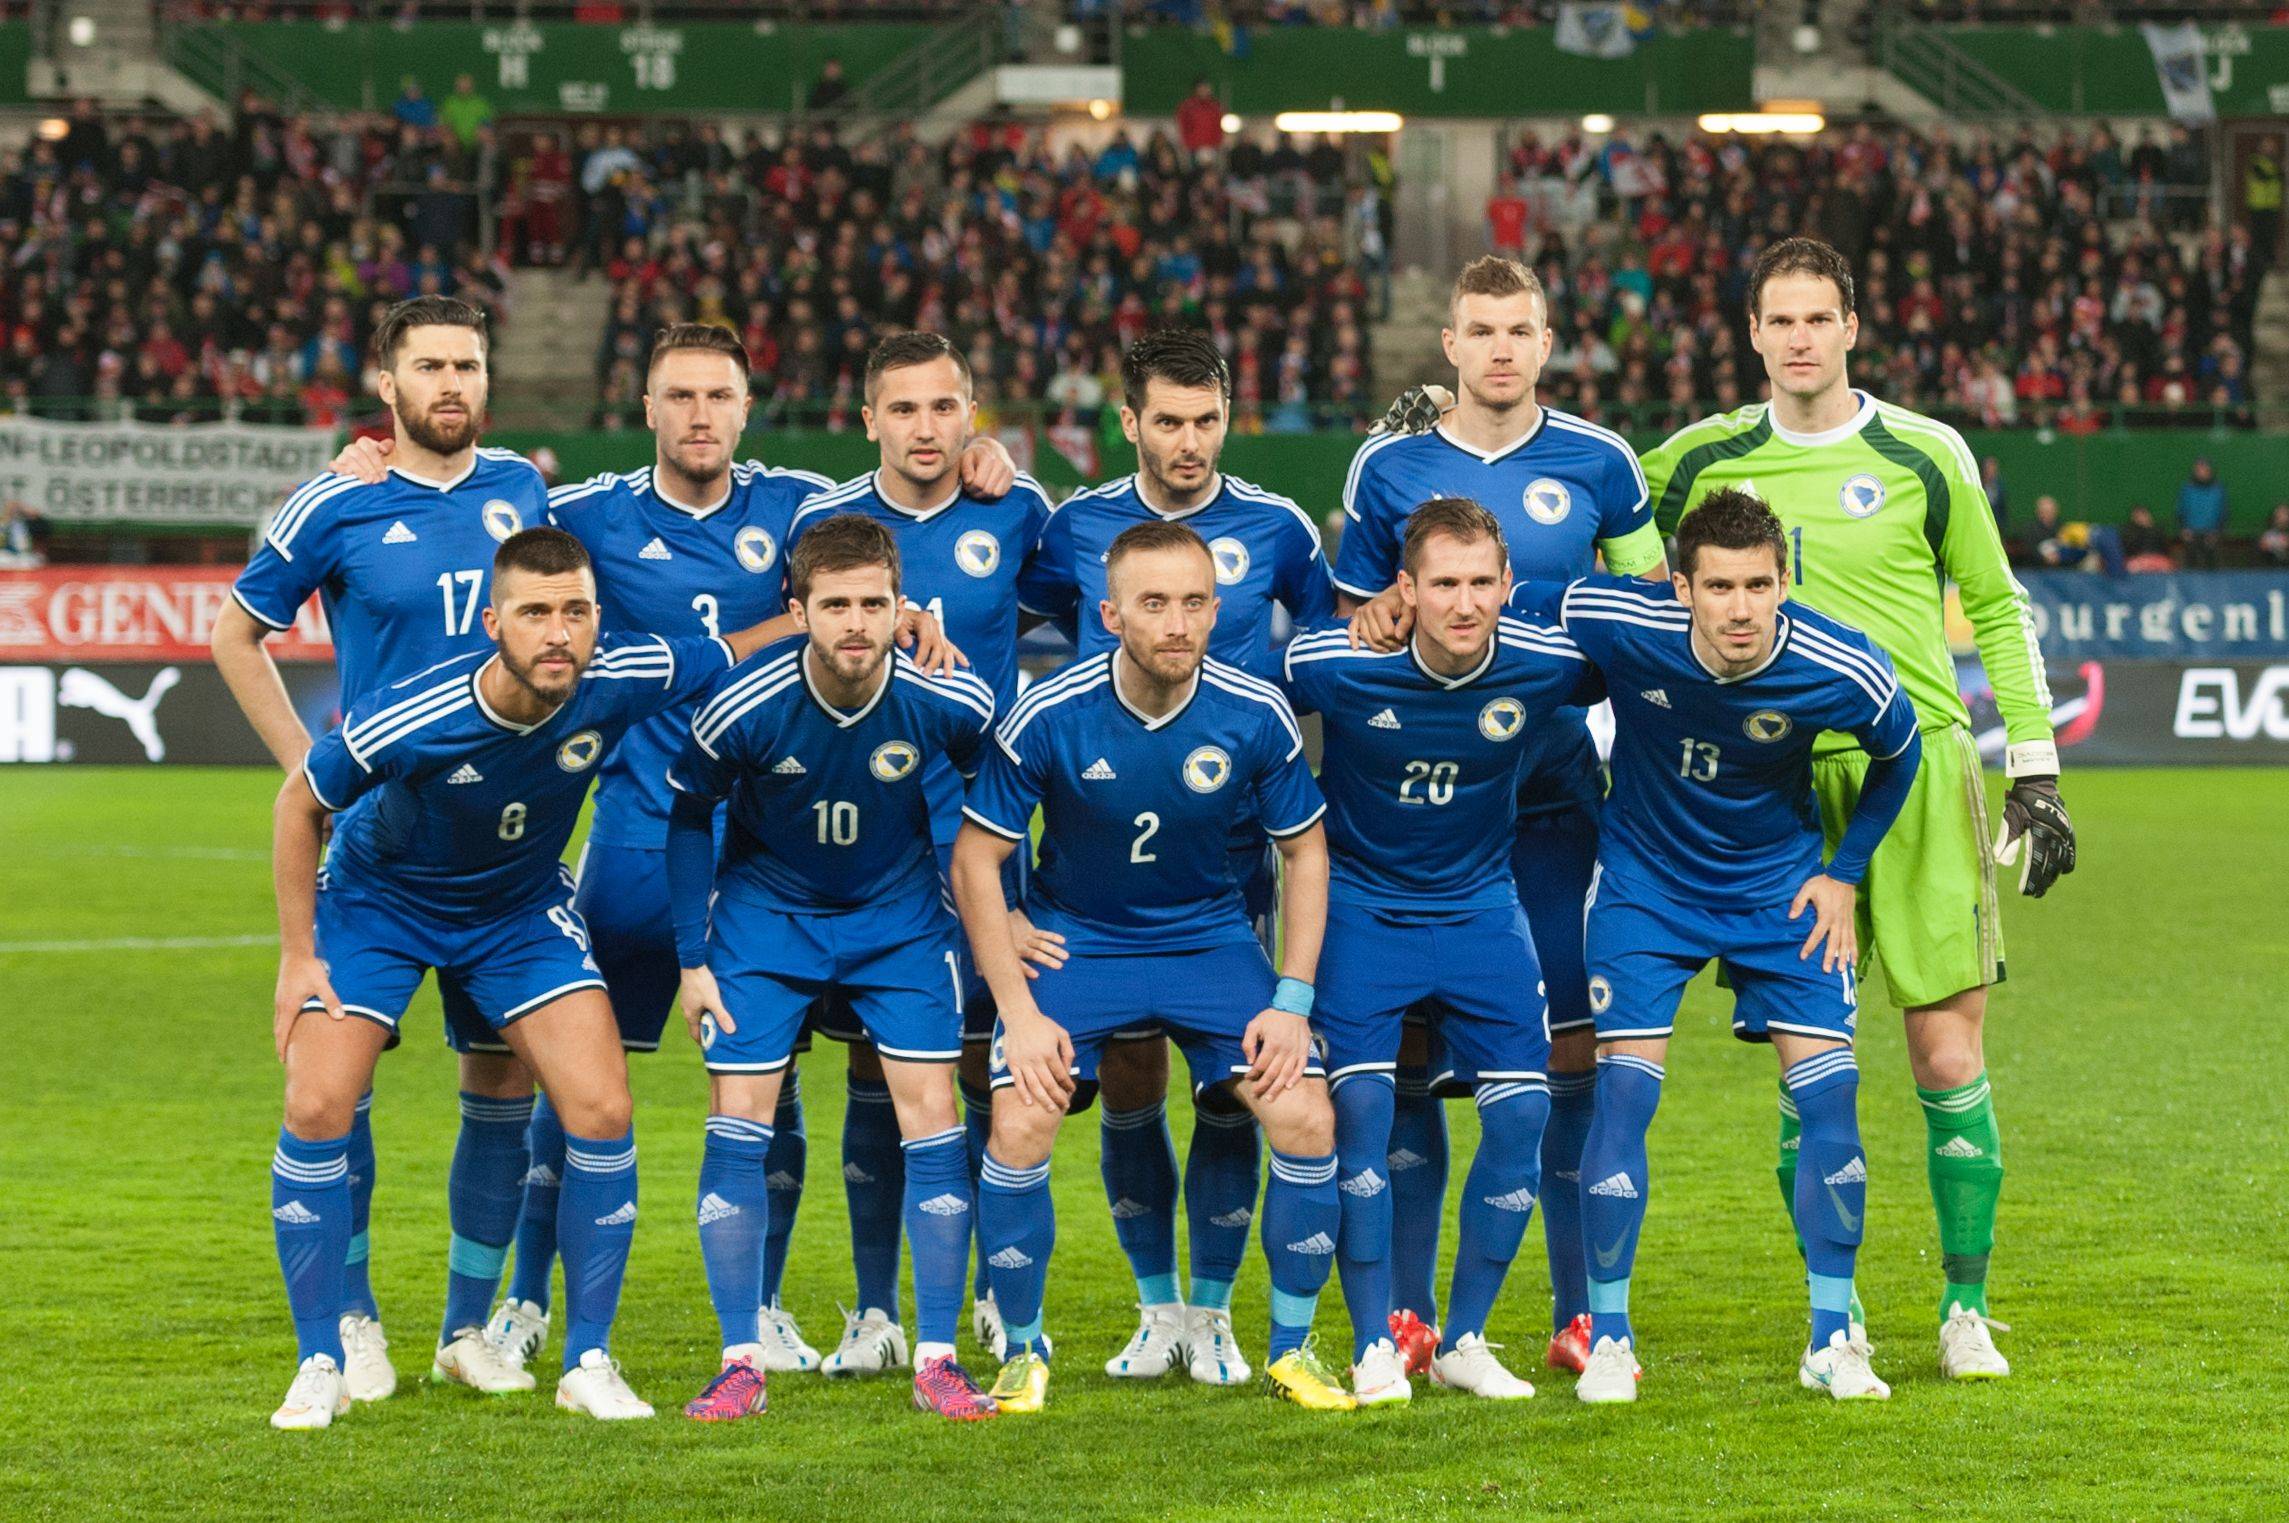 比赛时间:6-2 23:59 赛事前瞻: 波黑国家队近些年在国际足球舞台上的